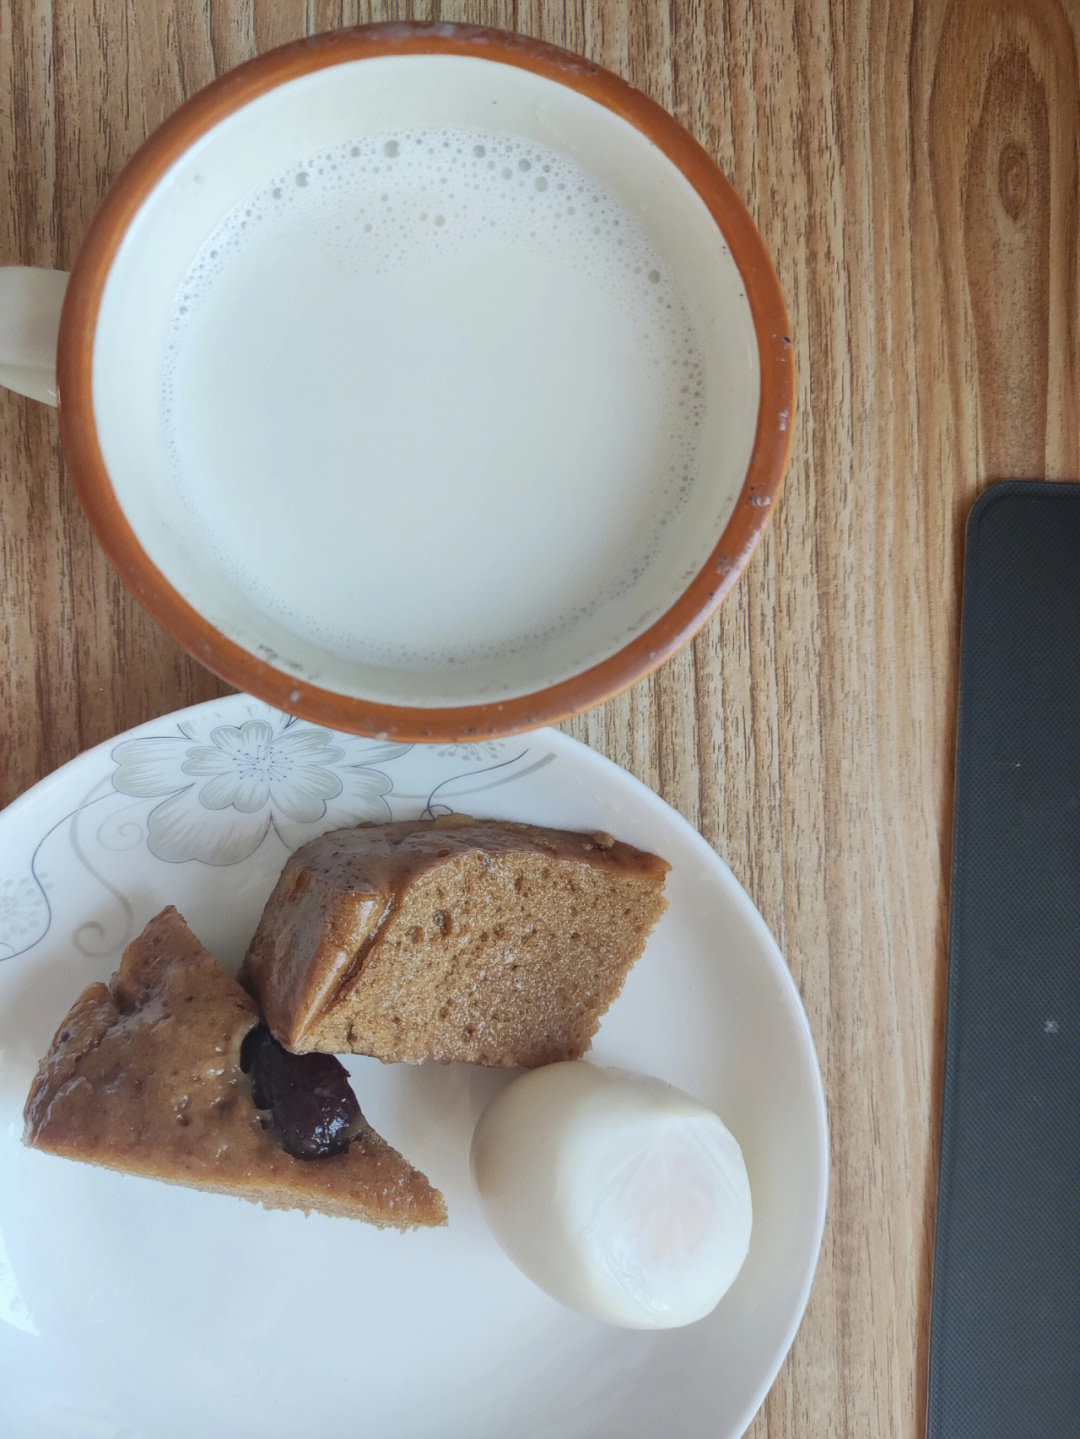 早餐:牛奶 鸡蛋 红糖发糕午餐:炒饼 粥加餐:柚子 坚果 酸奶麻花(没拍